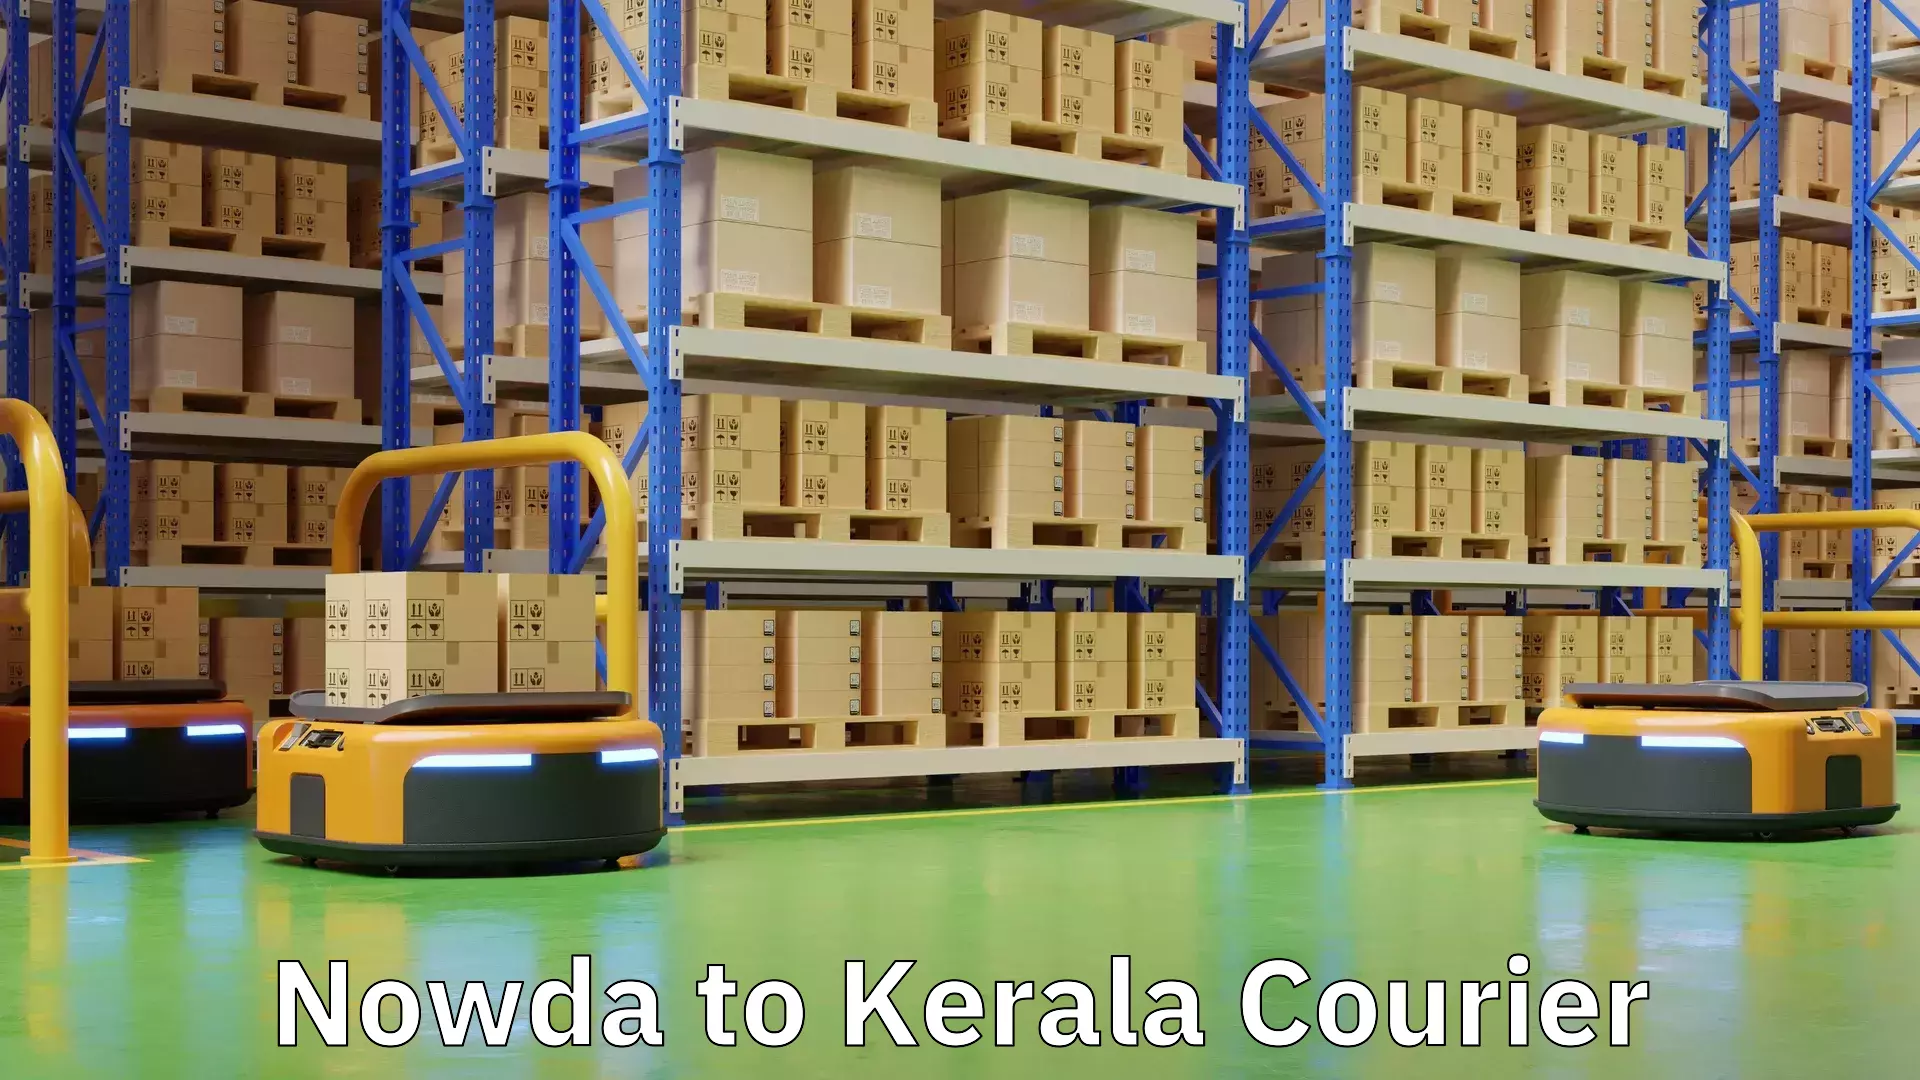 Flexible shipping options in Nowda to Kerala